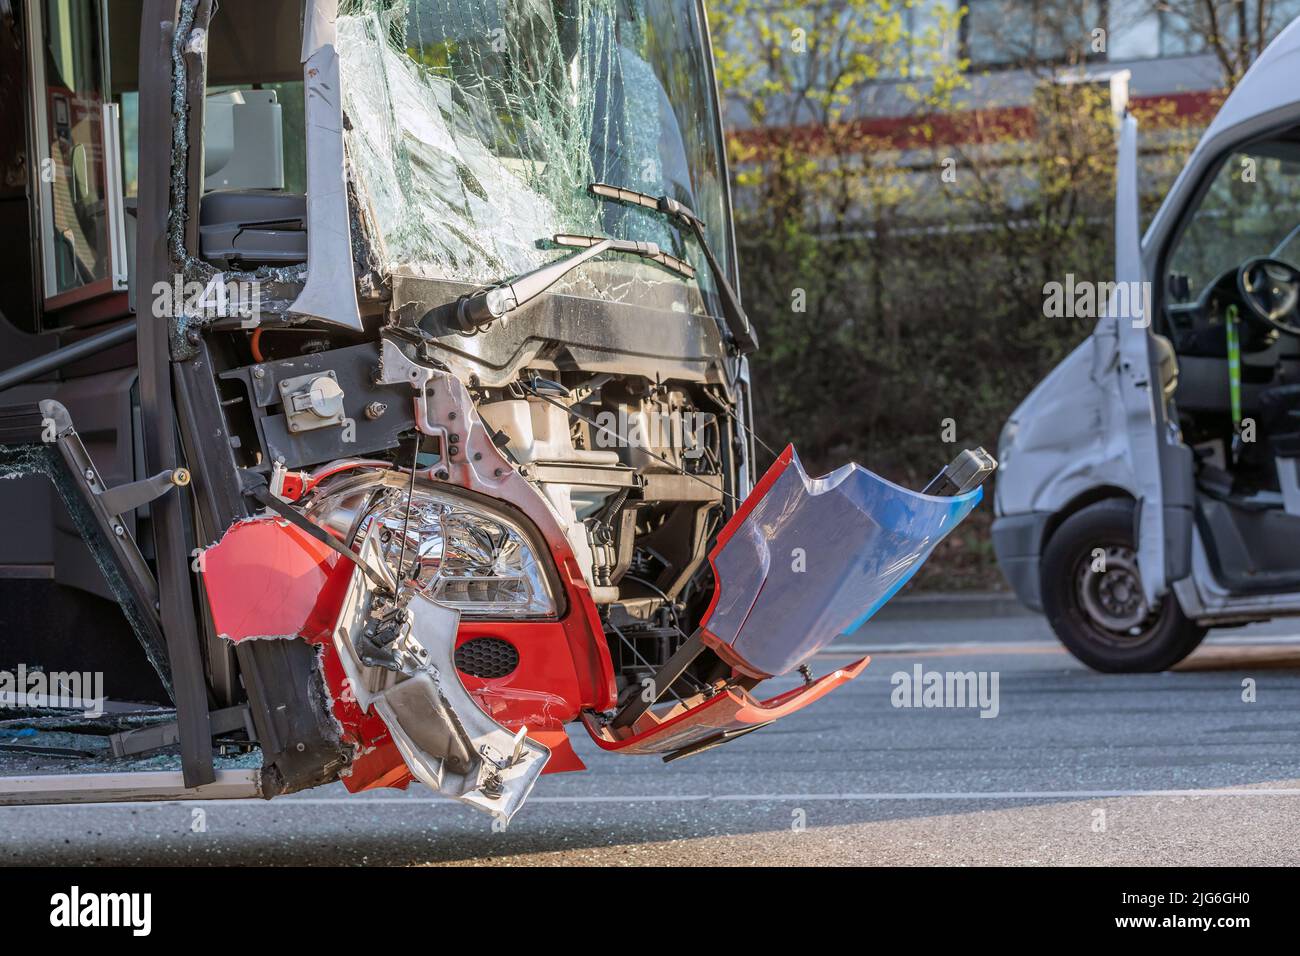 traffic accident between regular bus and van Stock Photo